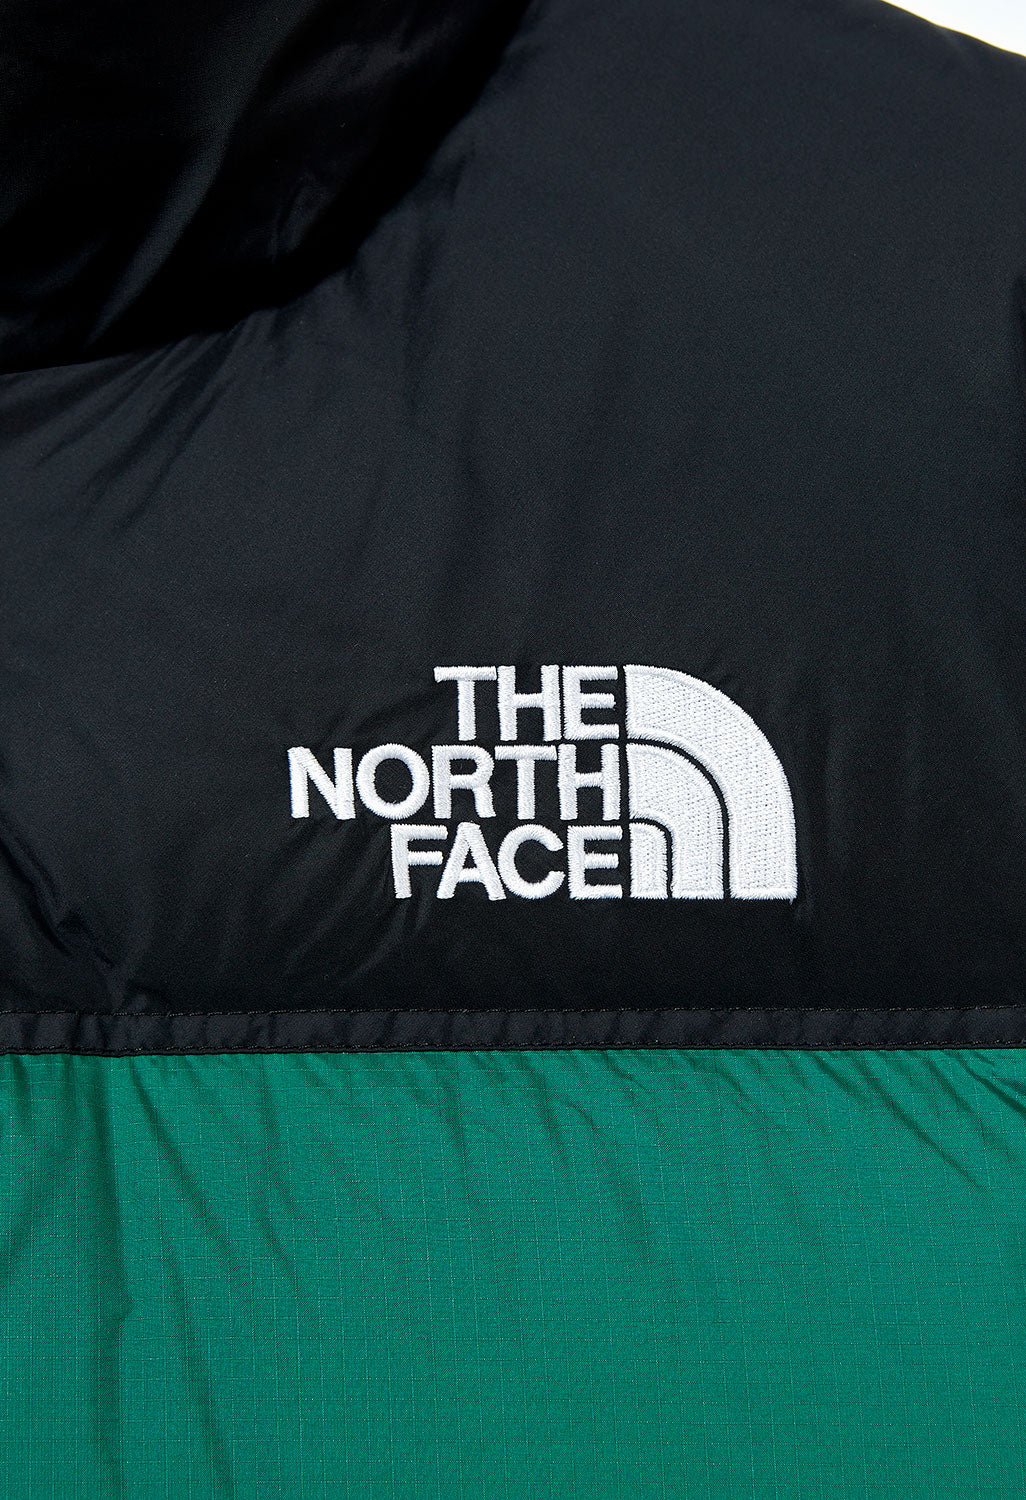 The North Face 1996 Retro Nuptse Men's Vest - Evergreen